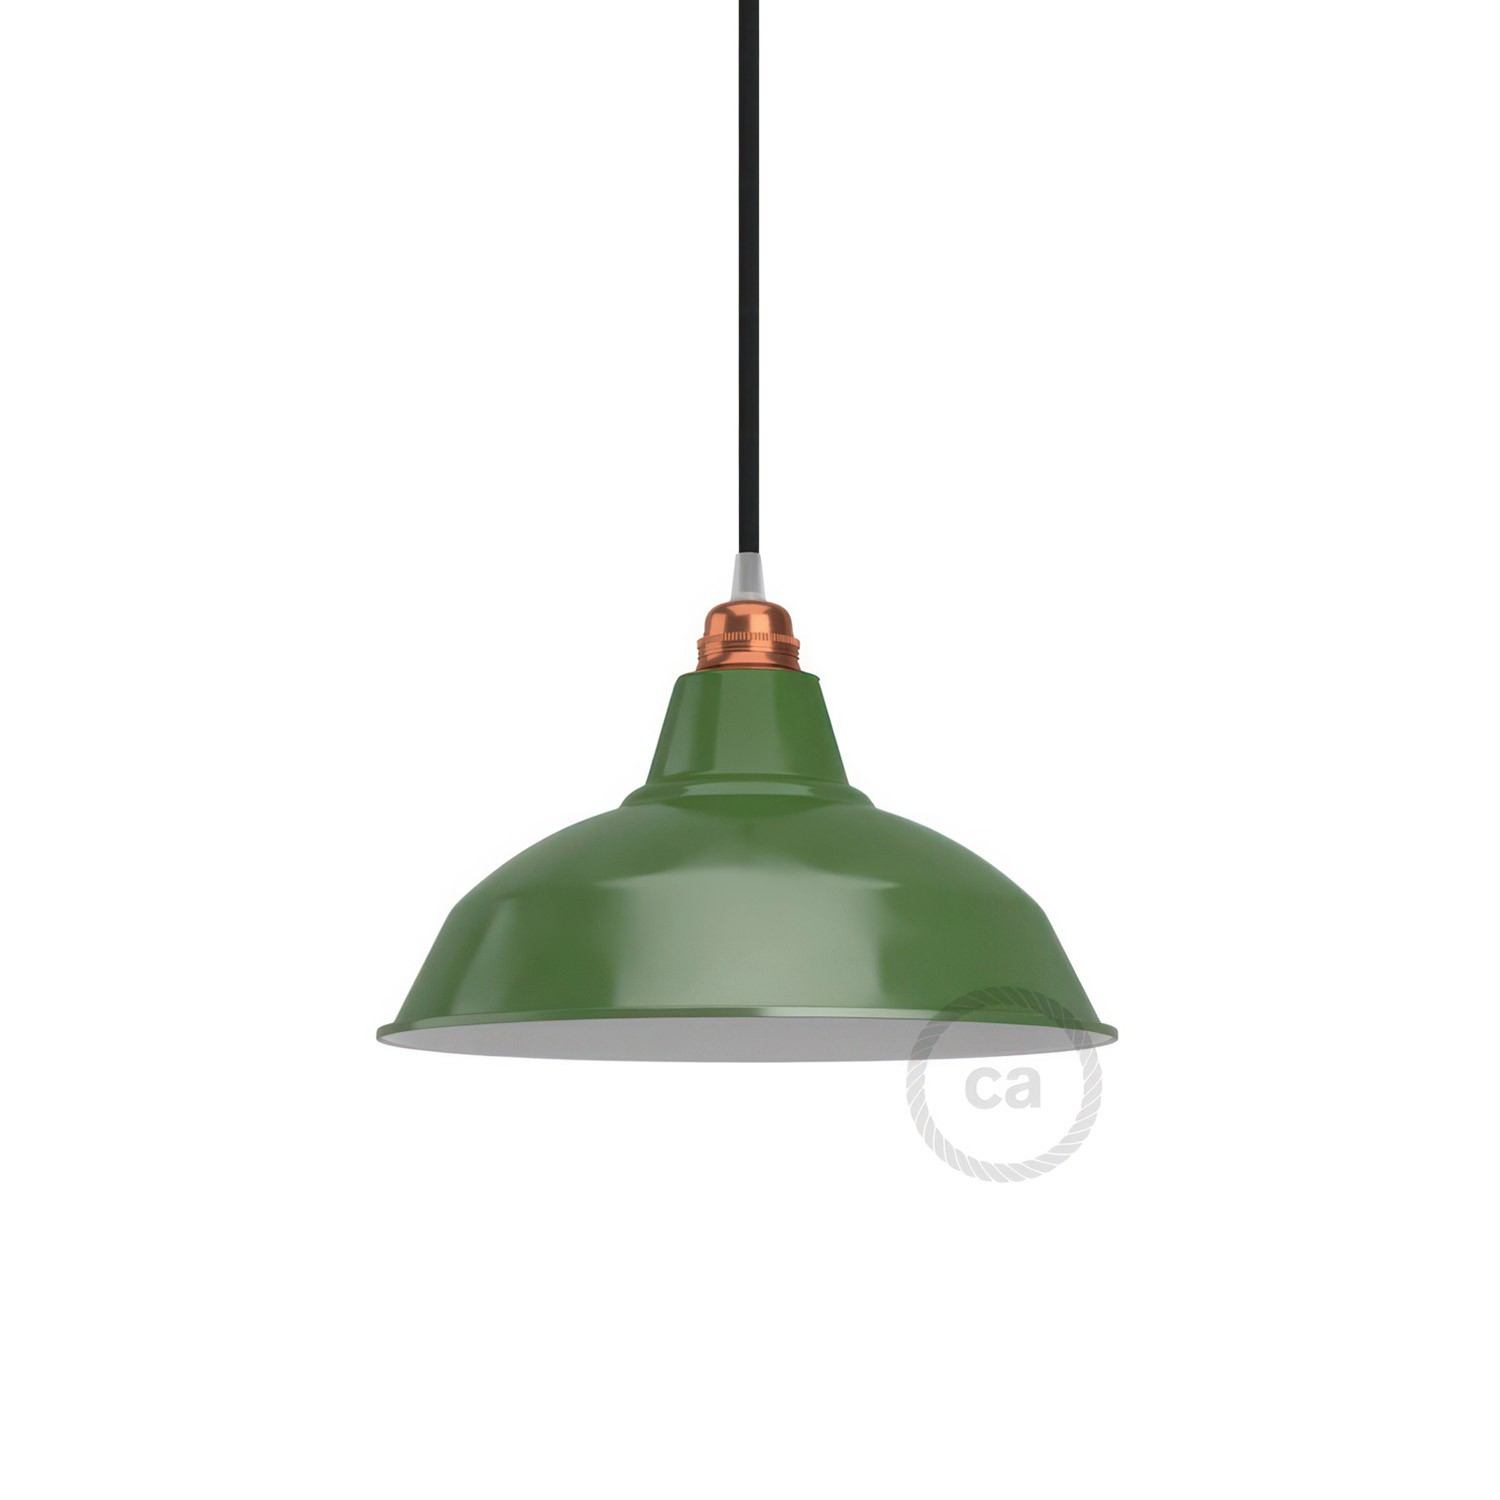 Lampenschirm Bistrot aus lackiertem Metall mit E27-Fassung, 30 cm Durchmesser